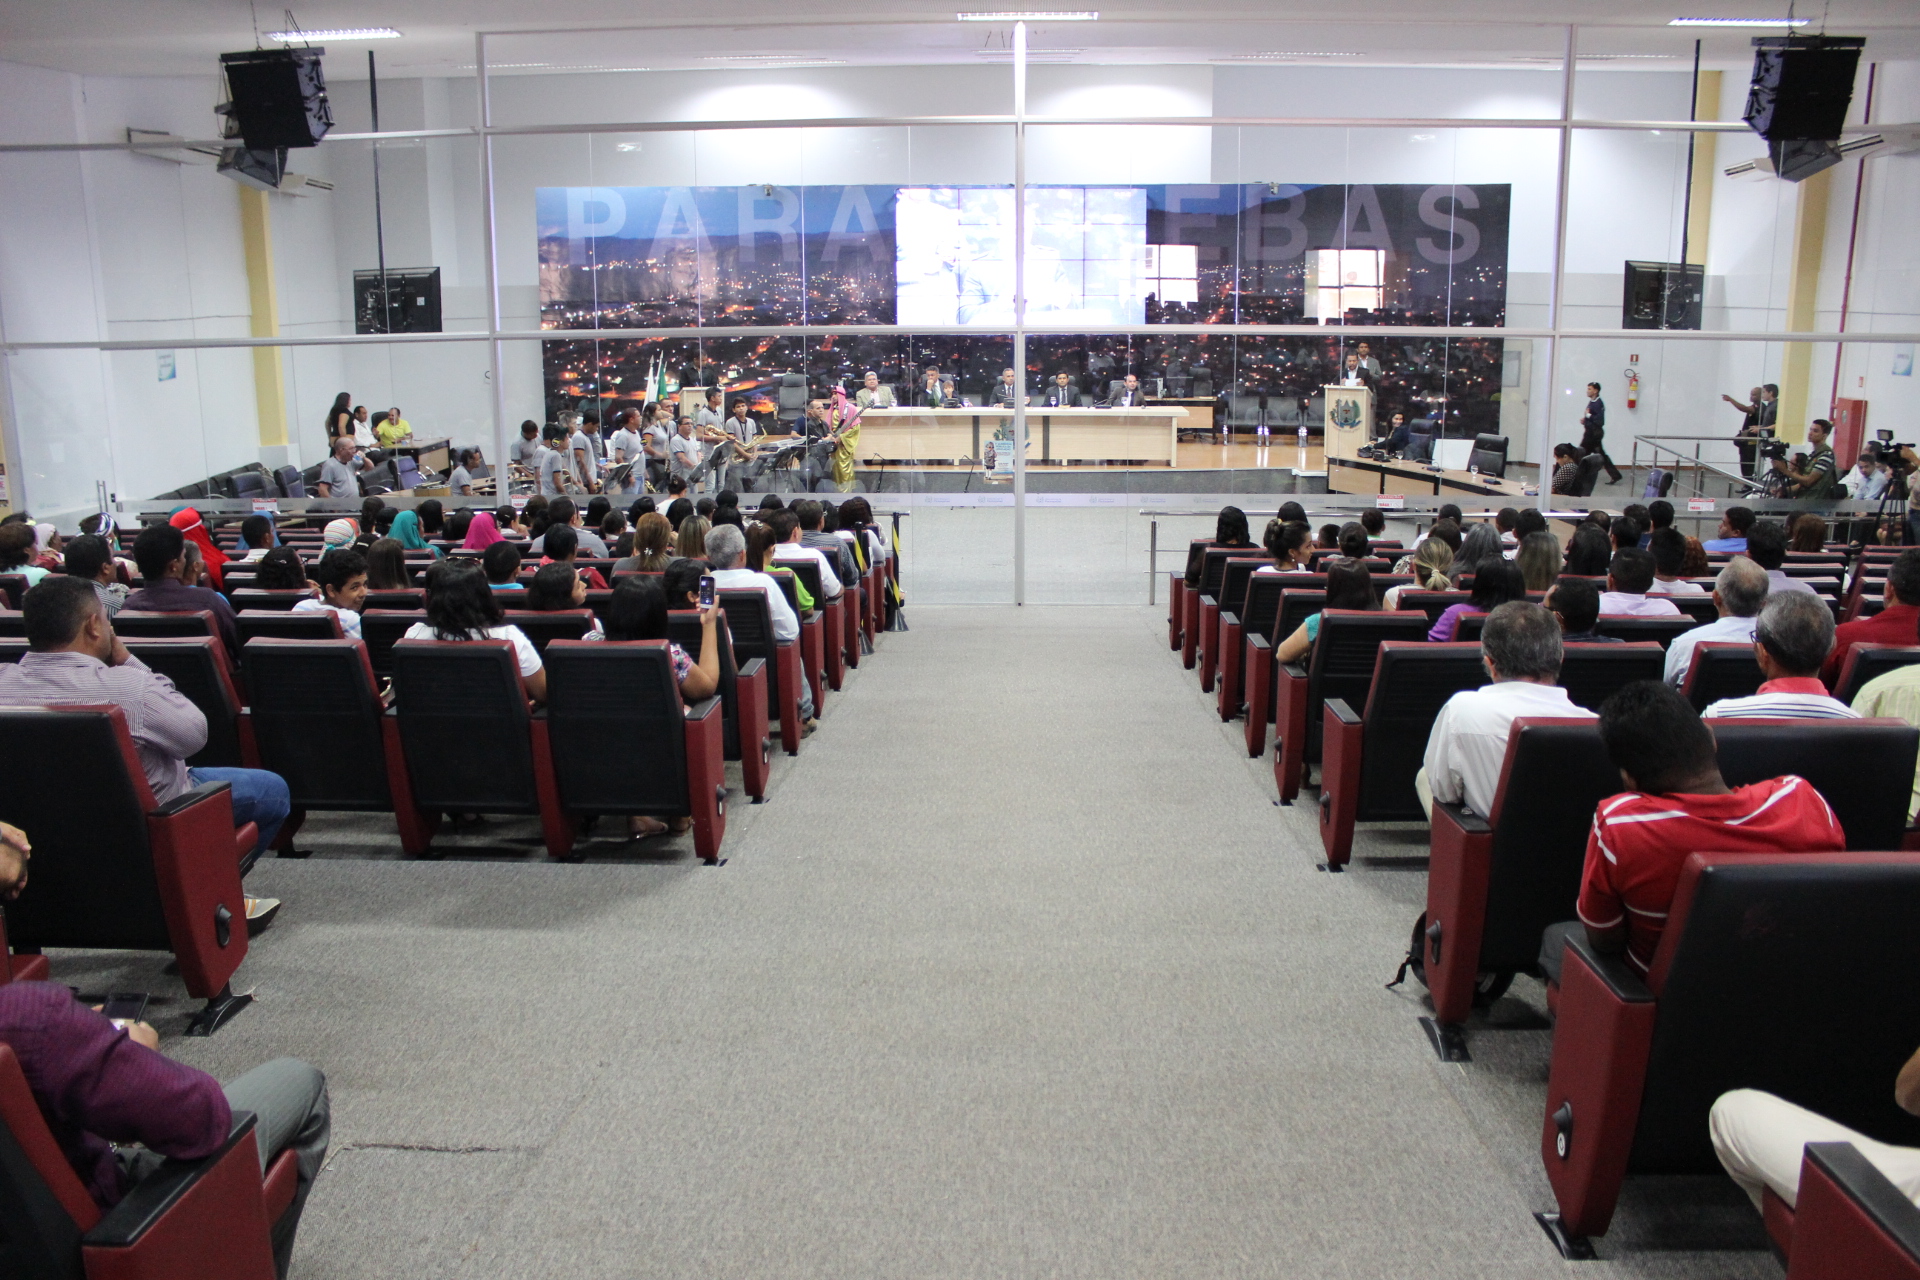  Dia do evangélico: Peças teatrais, hinos e louvores marcam Sessão Solene na Câmara Municipal de Parauapebas